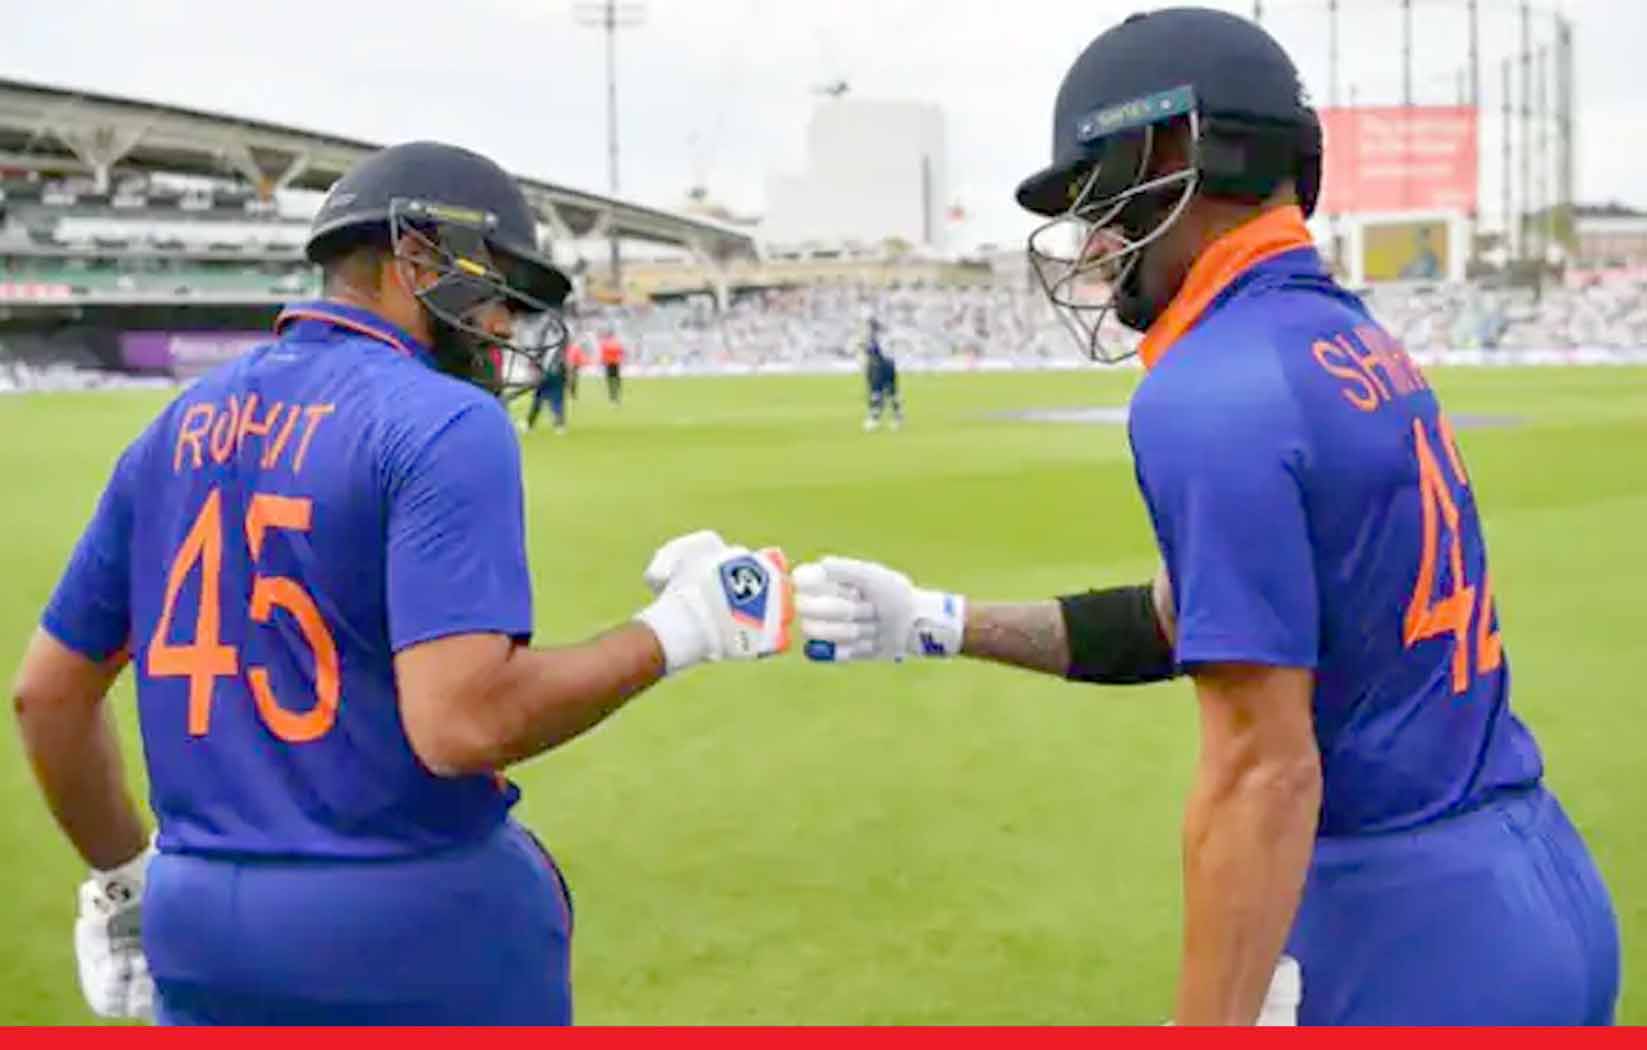 भारत ने इंग्लैंड को पहले वनडे मैच में 10 विकेट से हराया, जसप्रीत बुमराह रहे प्लेयर ऑफ द मैच 